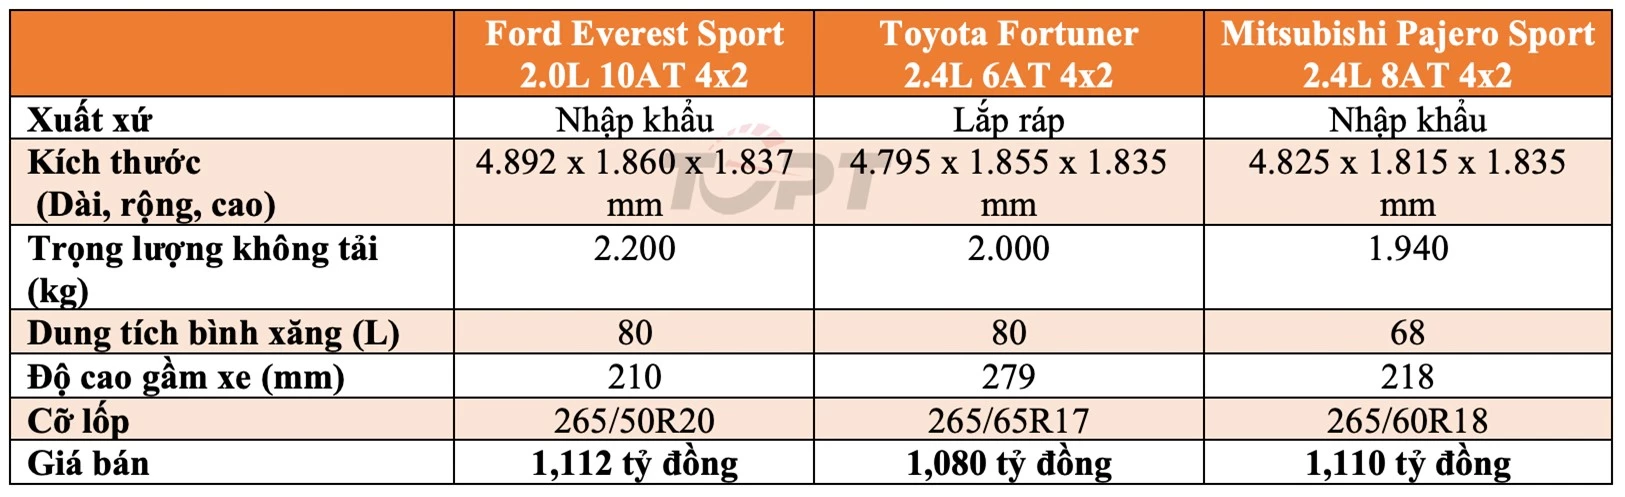 SUV tầm giá 1 tỷ đồng: Ford Everest Sport, Toyota Fortuner 2.4L AT và Mitsubishi Pajero Sport 2.4 AT: Lựa chọn nào cho bạn? - Hình 2